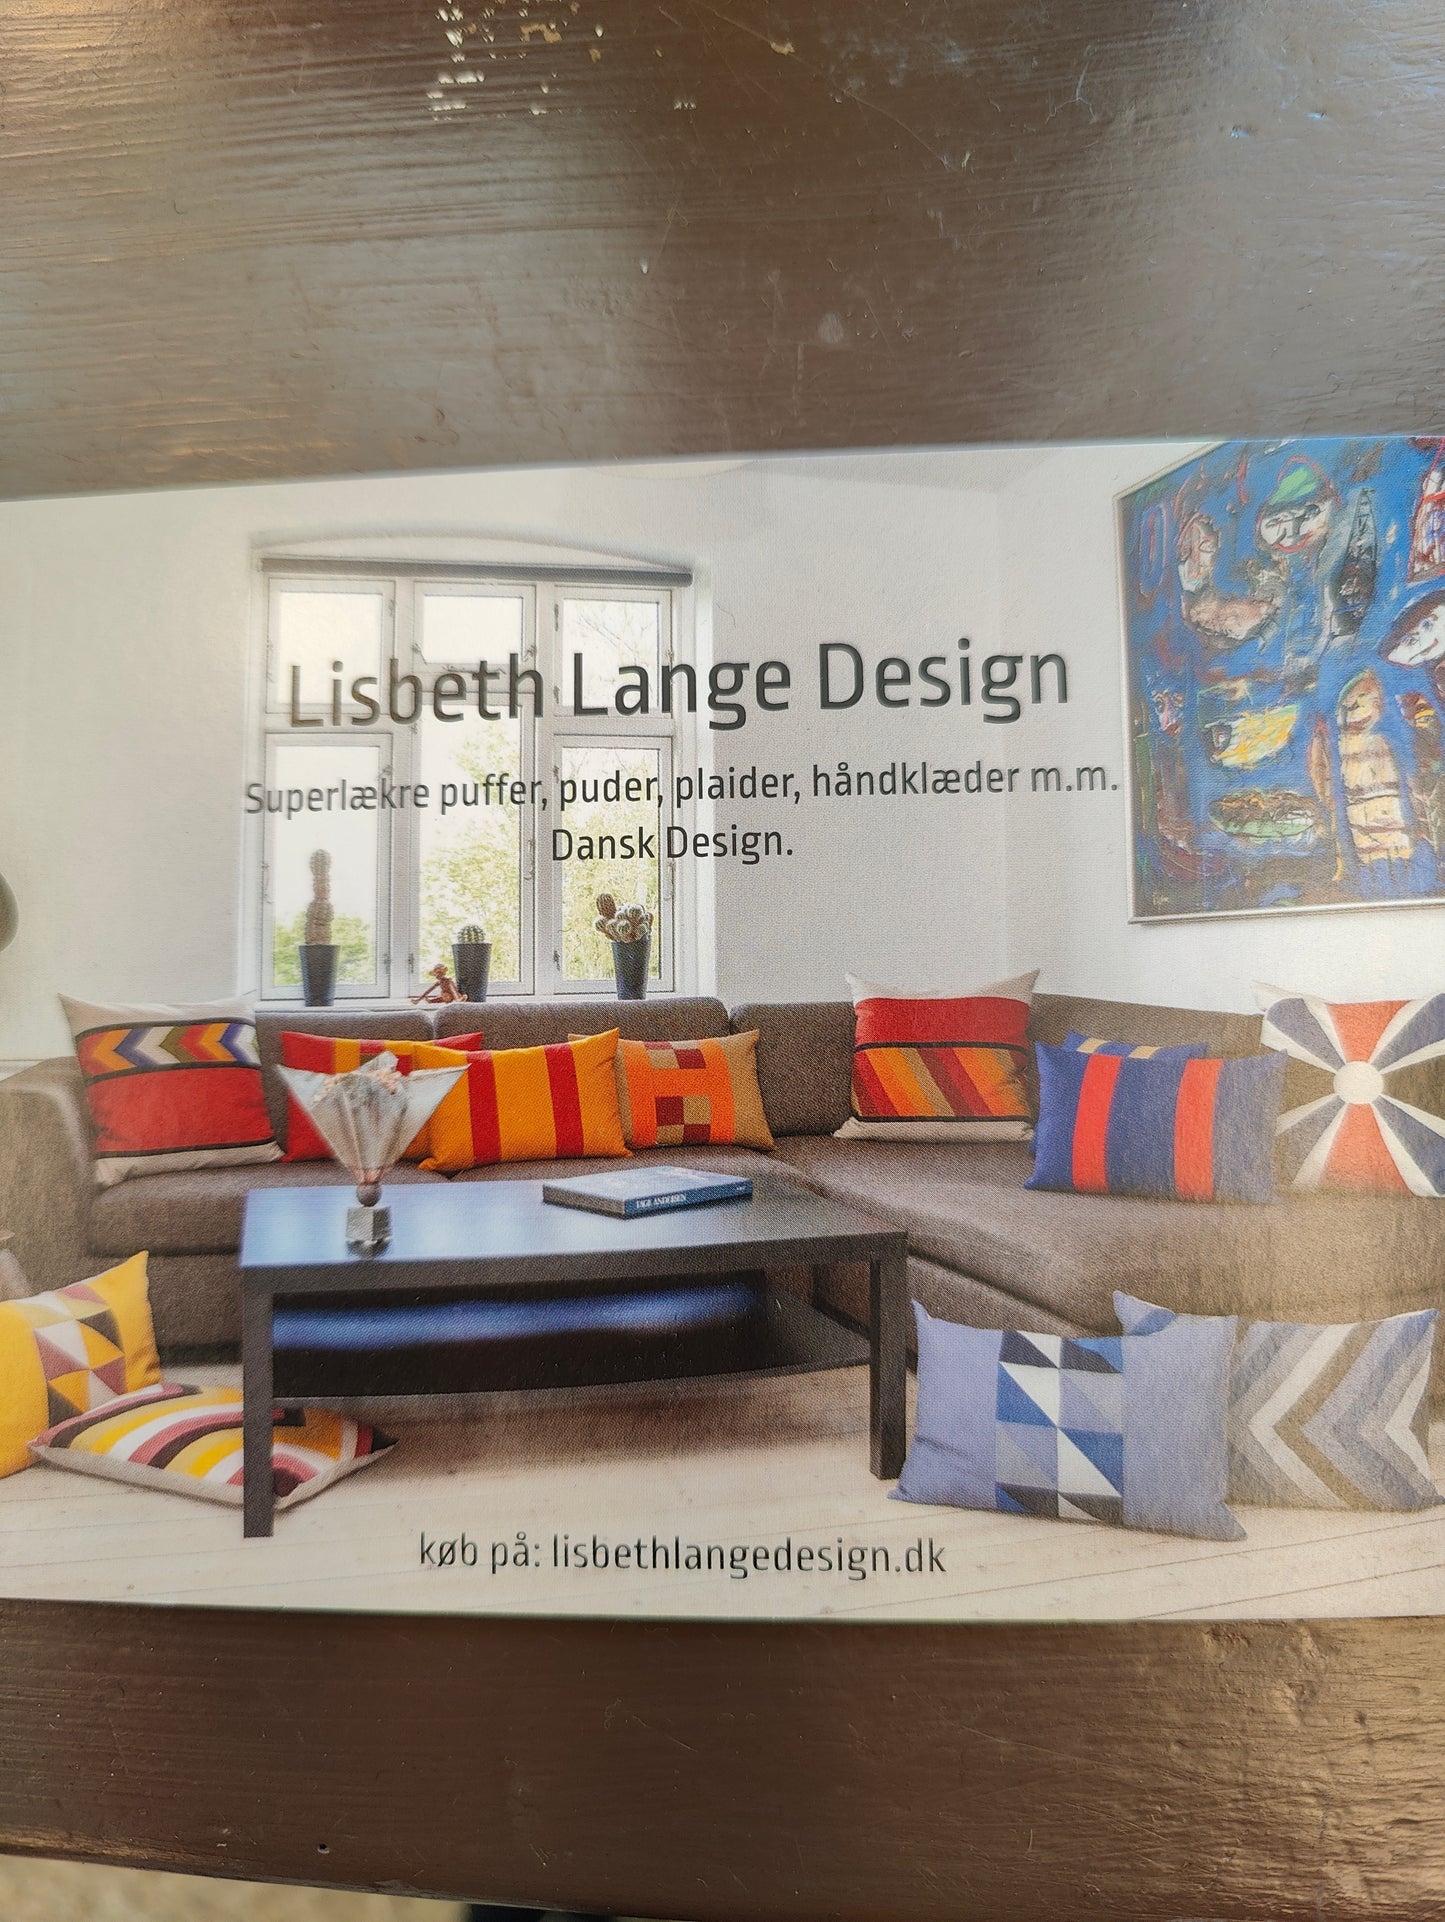 Lisbeth Lange Design